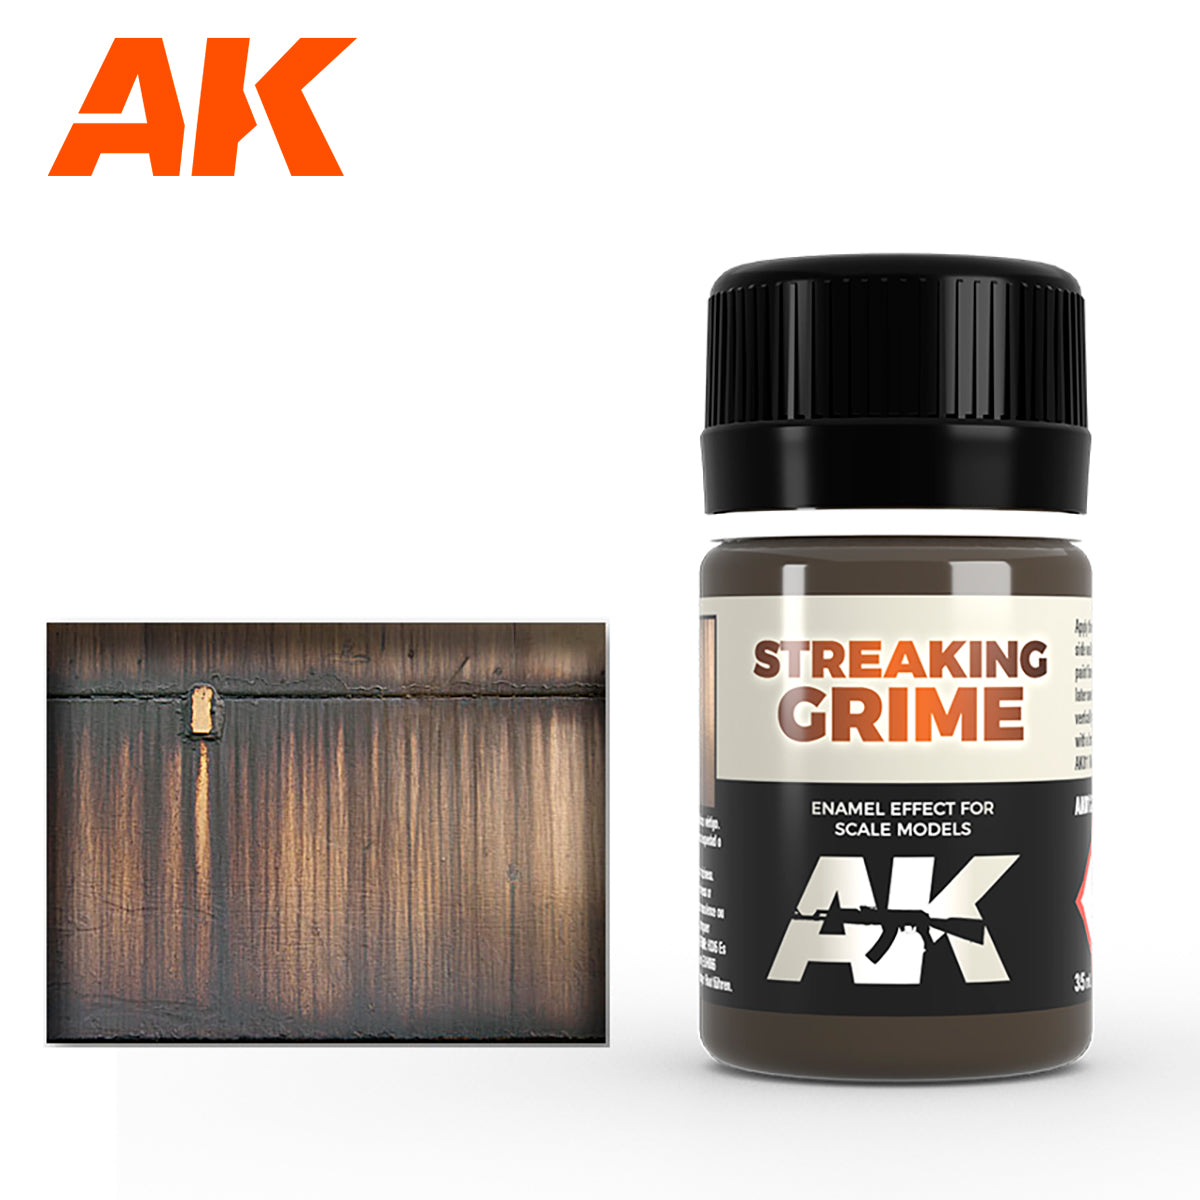 AK012 - AK Interactive Streaking Grime 35ml